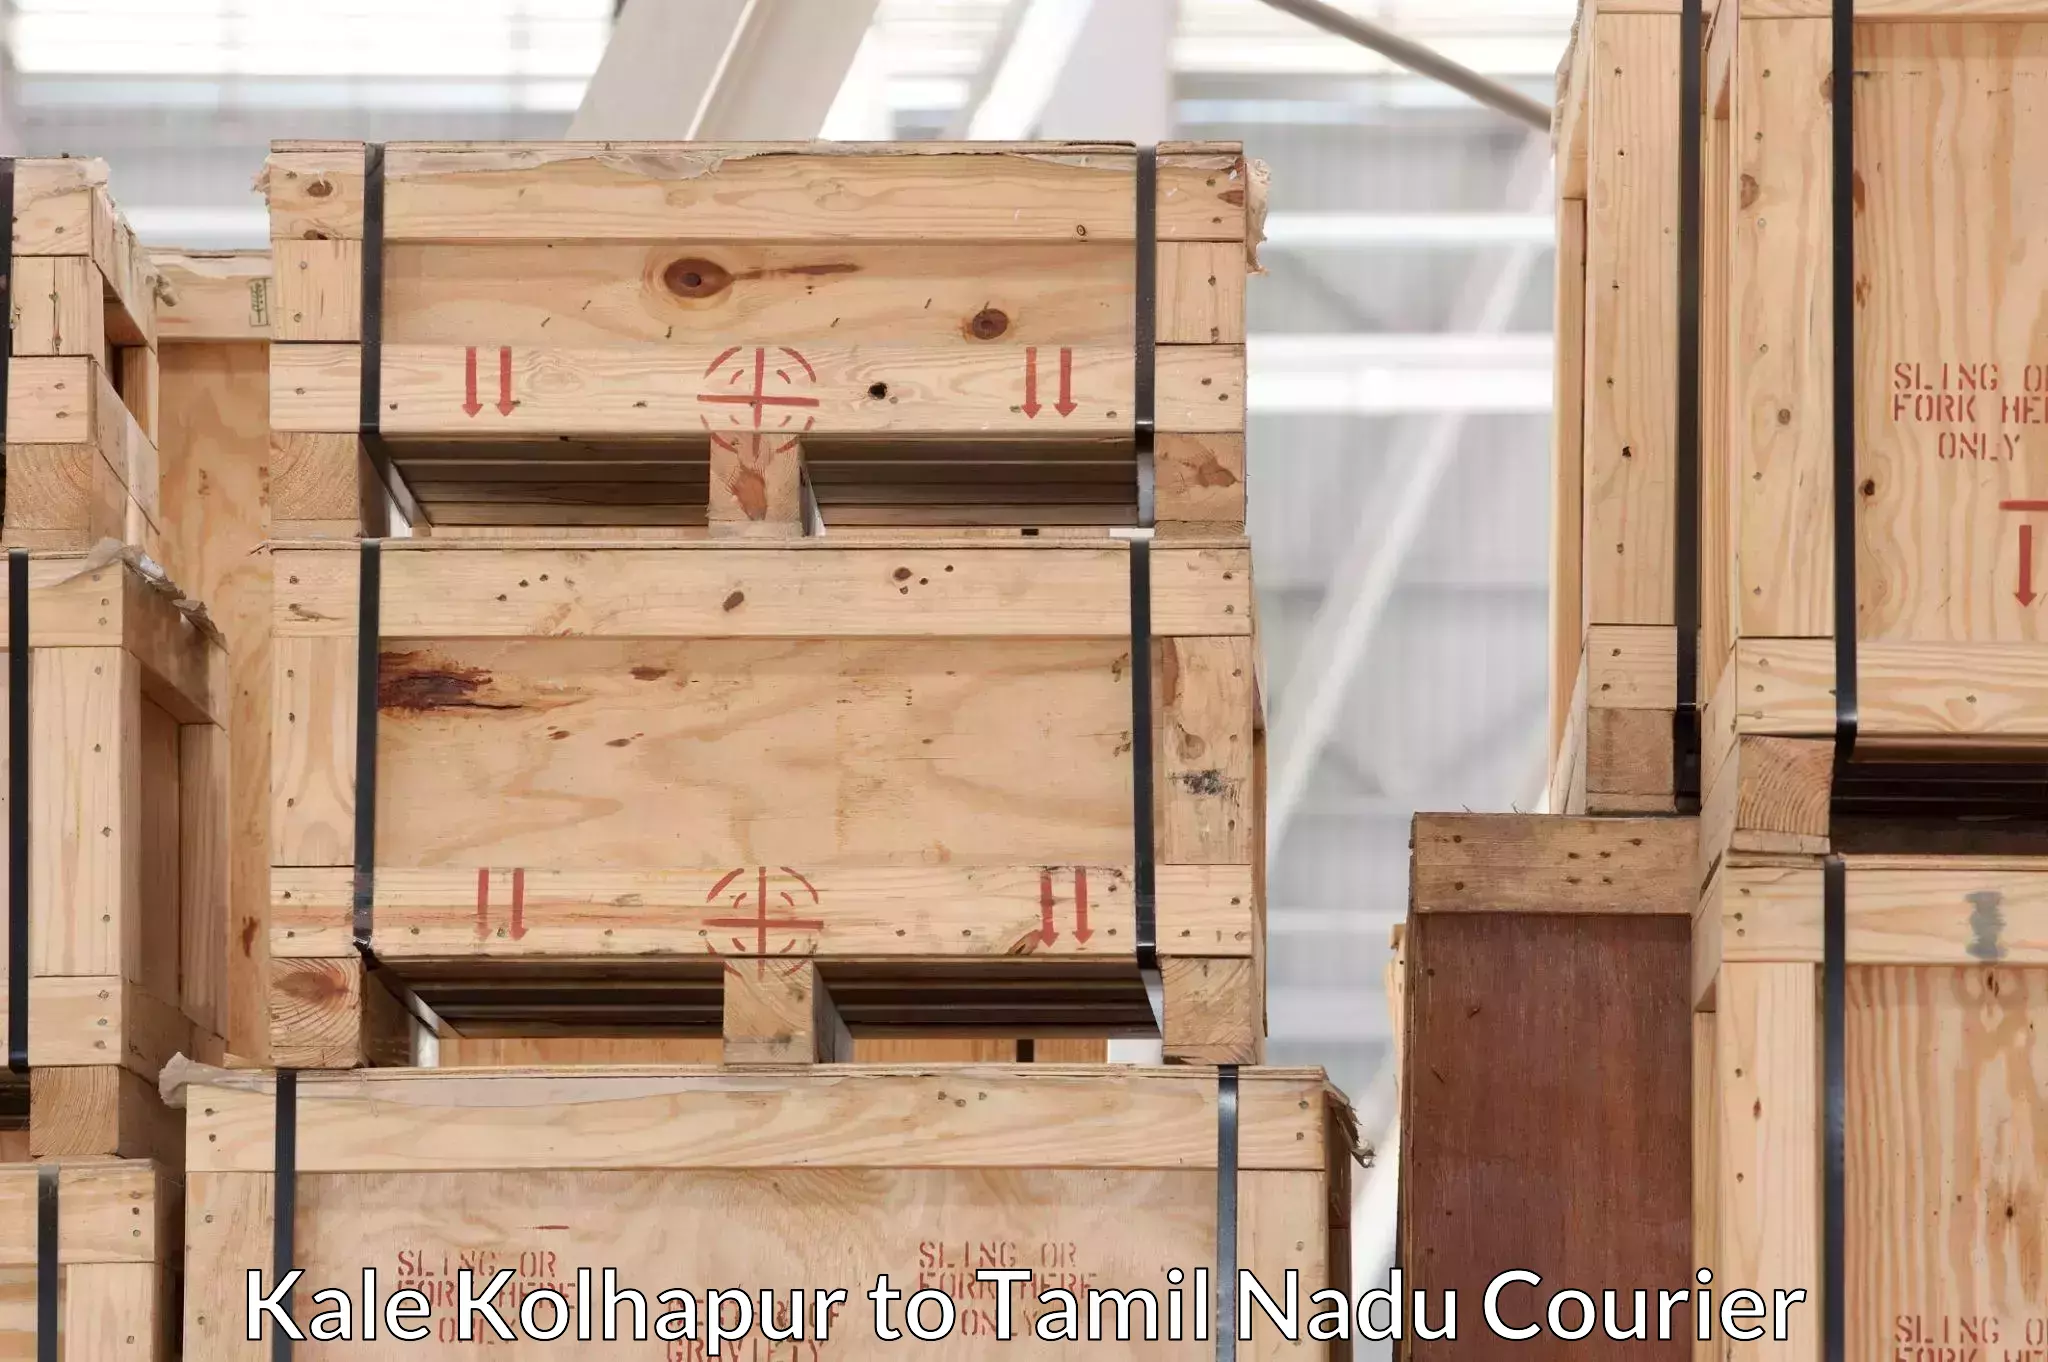 Nationwide furniture transport Kale Kolhapur to Katpadi